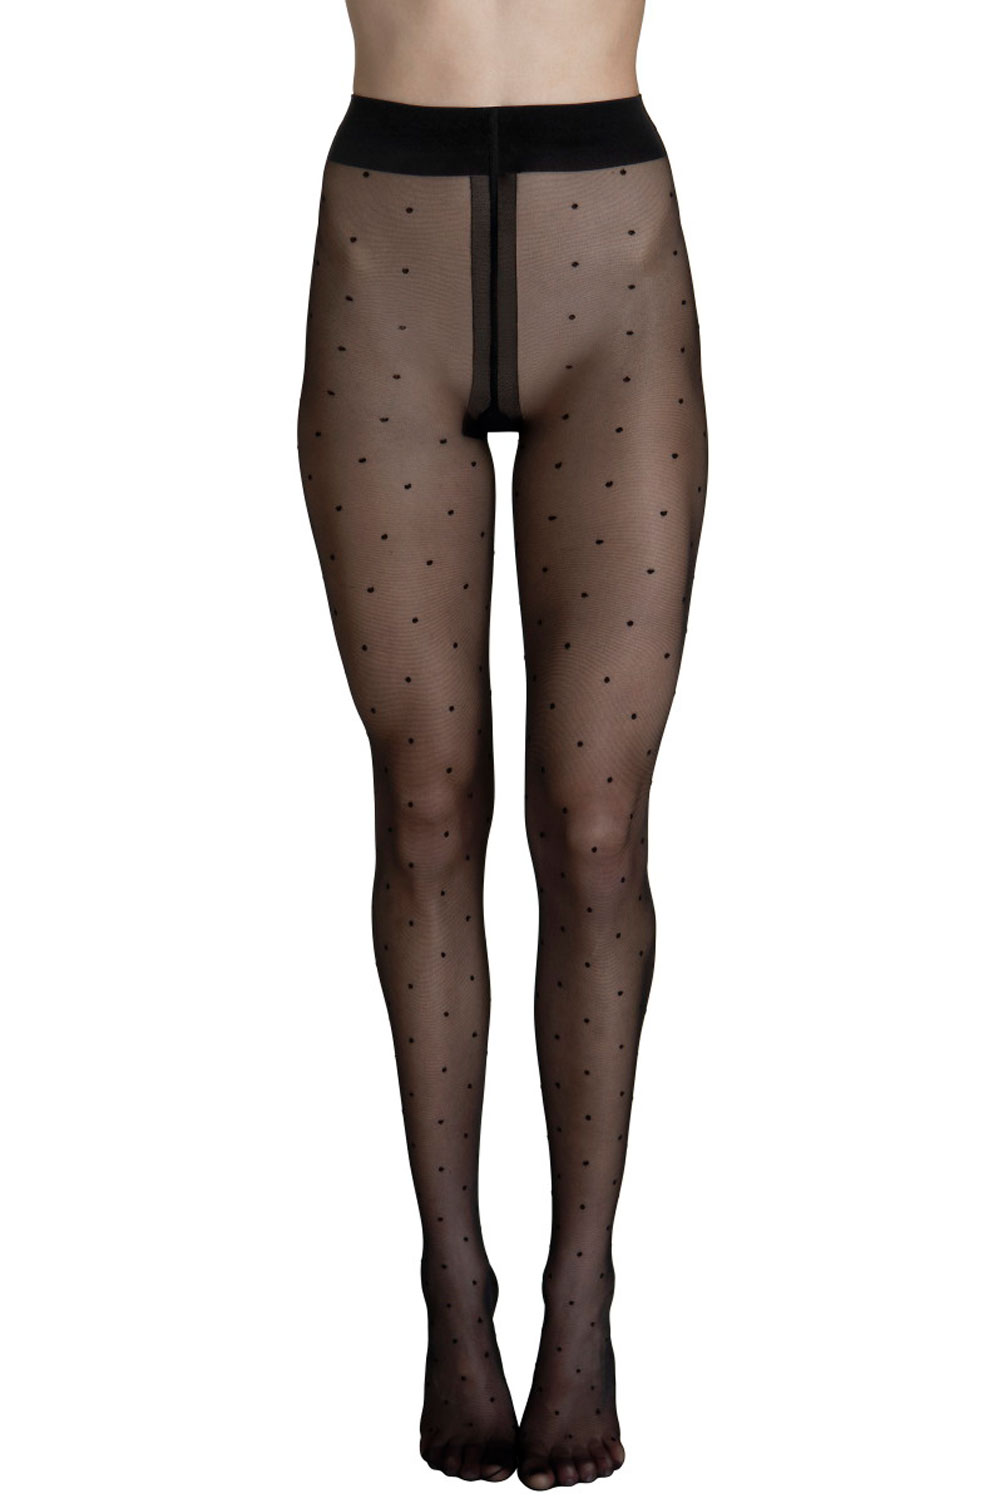 Lisca Fashion Dot 20 Strumpfhose mit Tupfen Socks and tights 38 schwarz günstig online kaufen